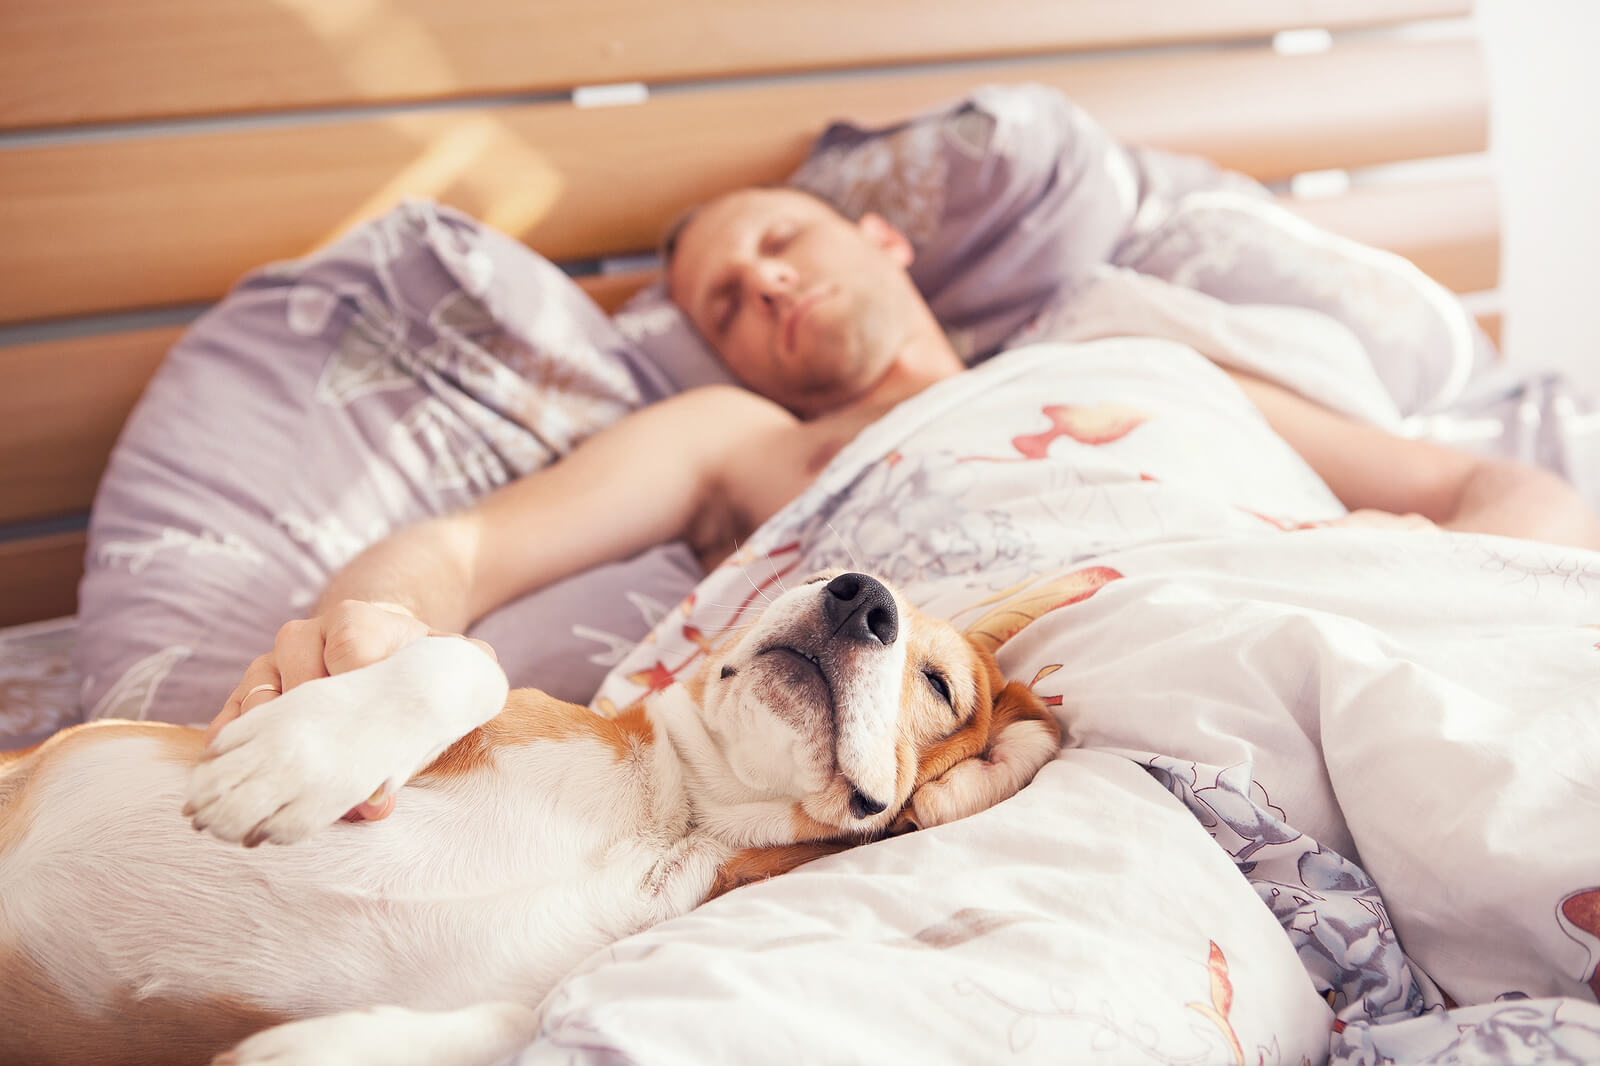  Các hành vi trong lúc ngủ đều là phản ứng sinh lý thông thường